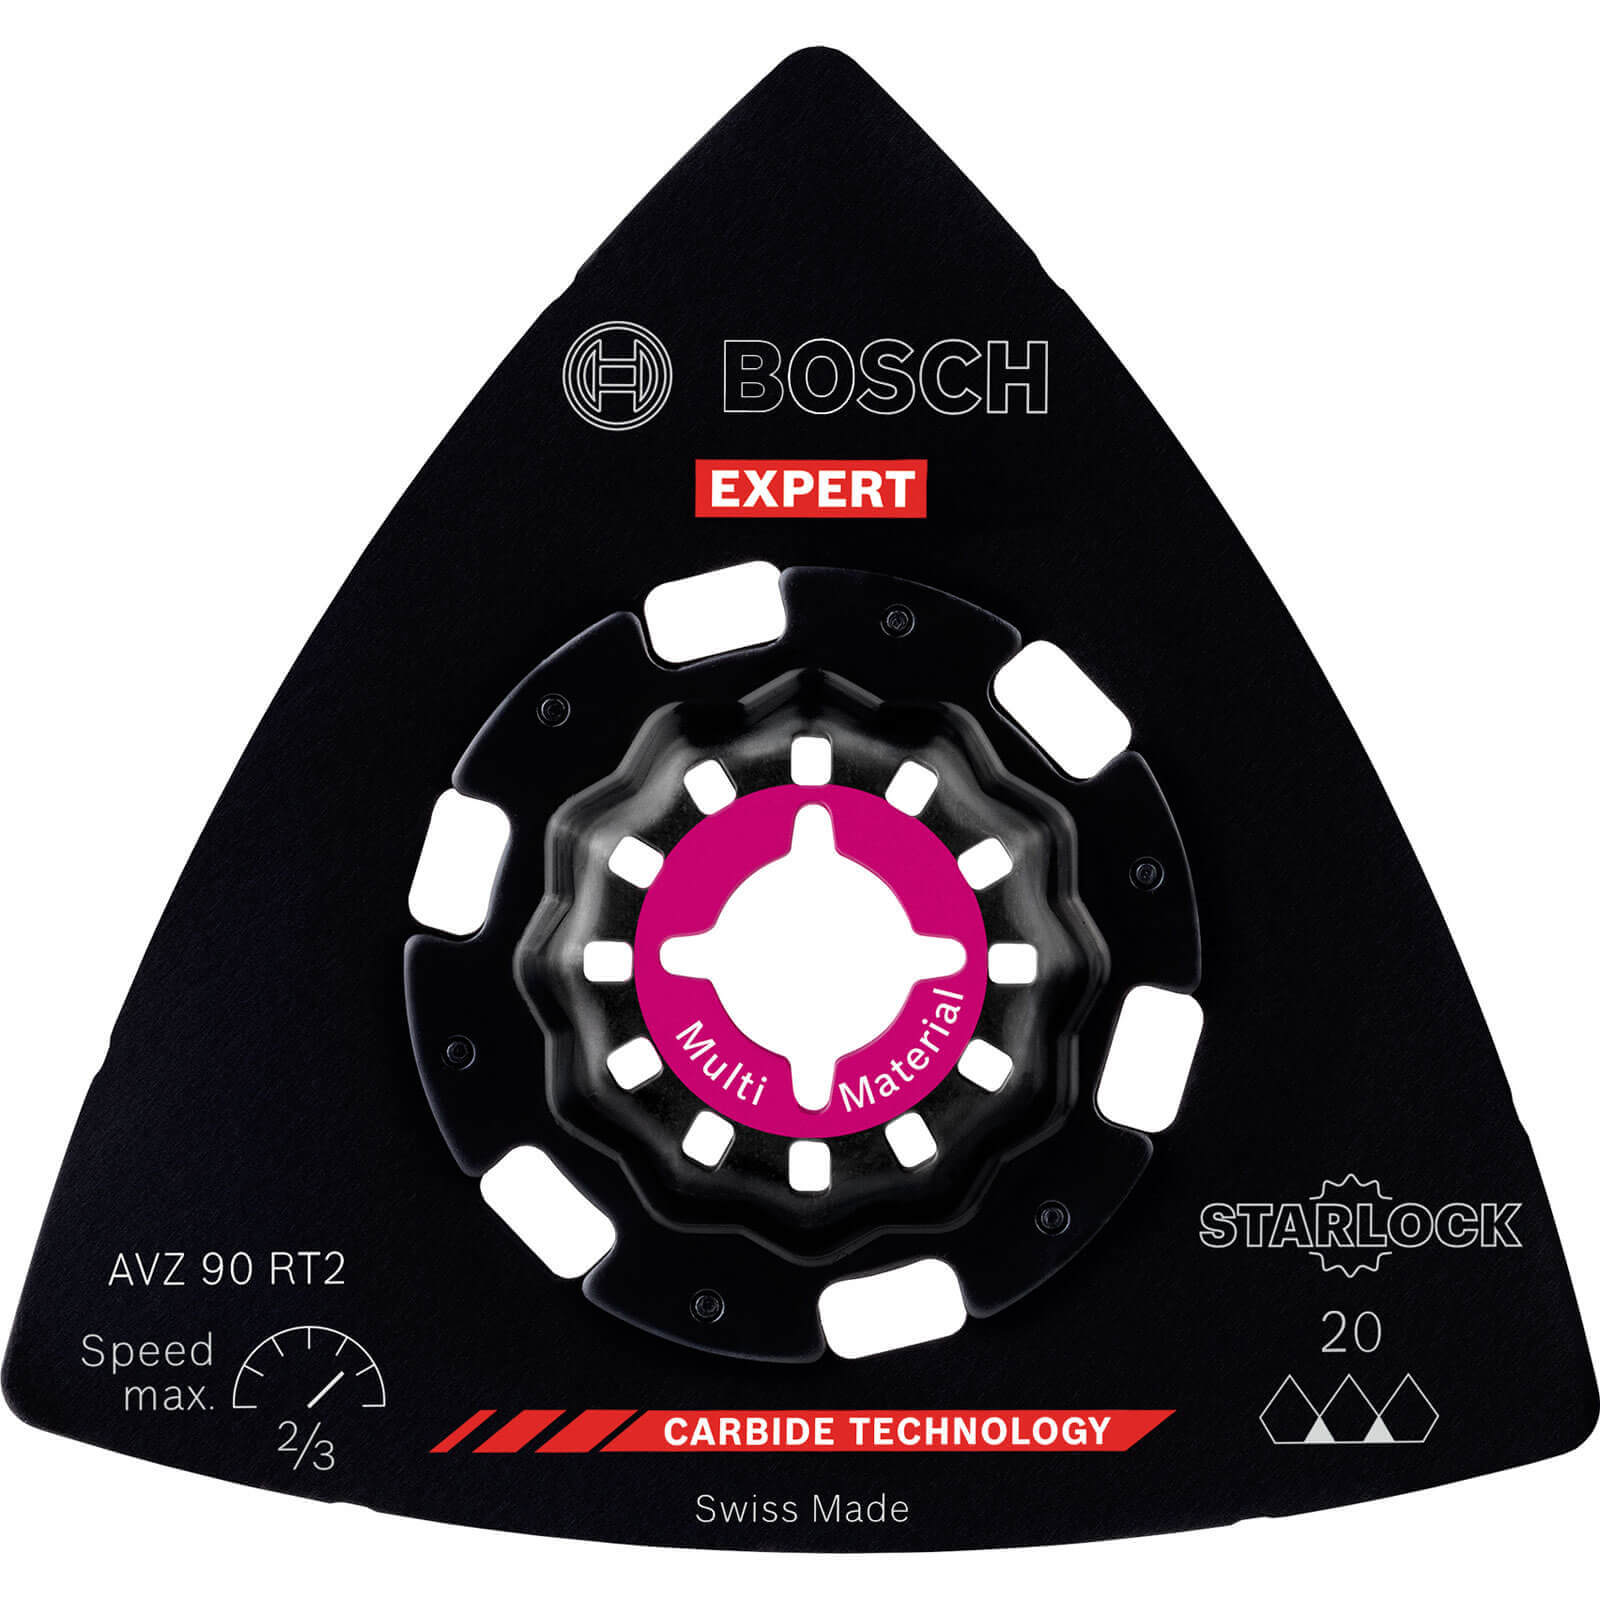 Image of Bosch Expert AVZ 90 RT Starlock Oscillating Multi Tool Sanding Plate 90mm 20g Pack of 1